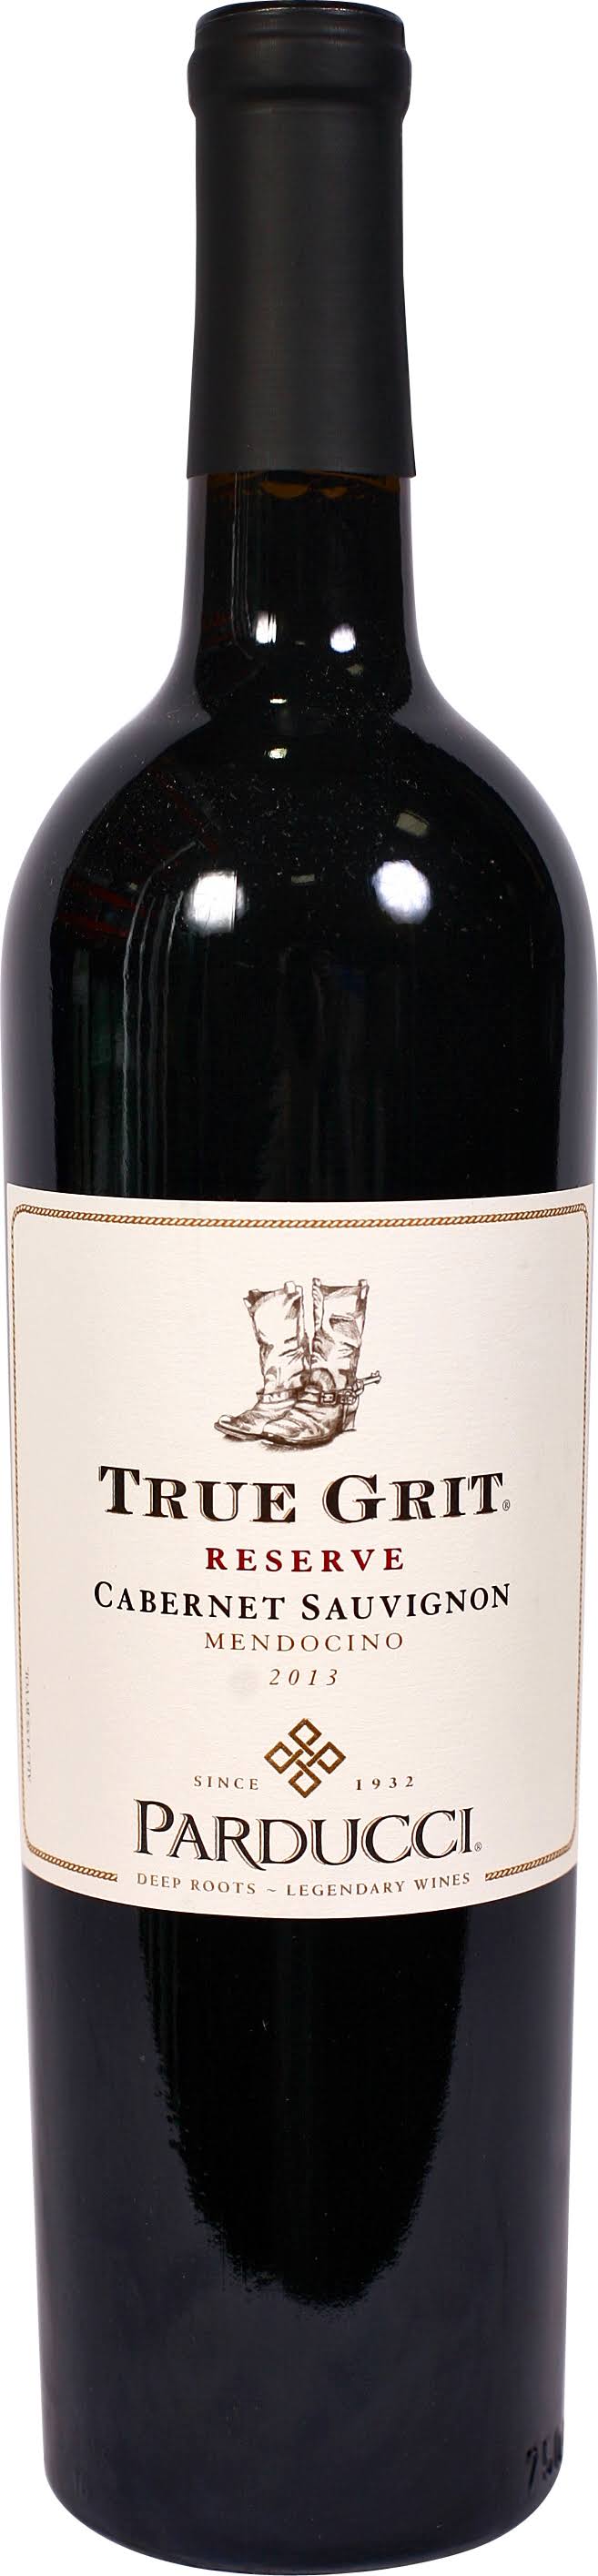 Parducci True Grit Reserve Cabernet Sauvignon, California (Vintage Varies) - 750 ml bottle